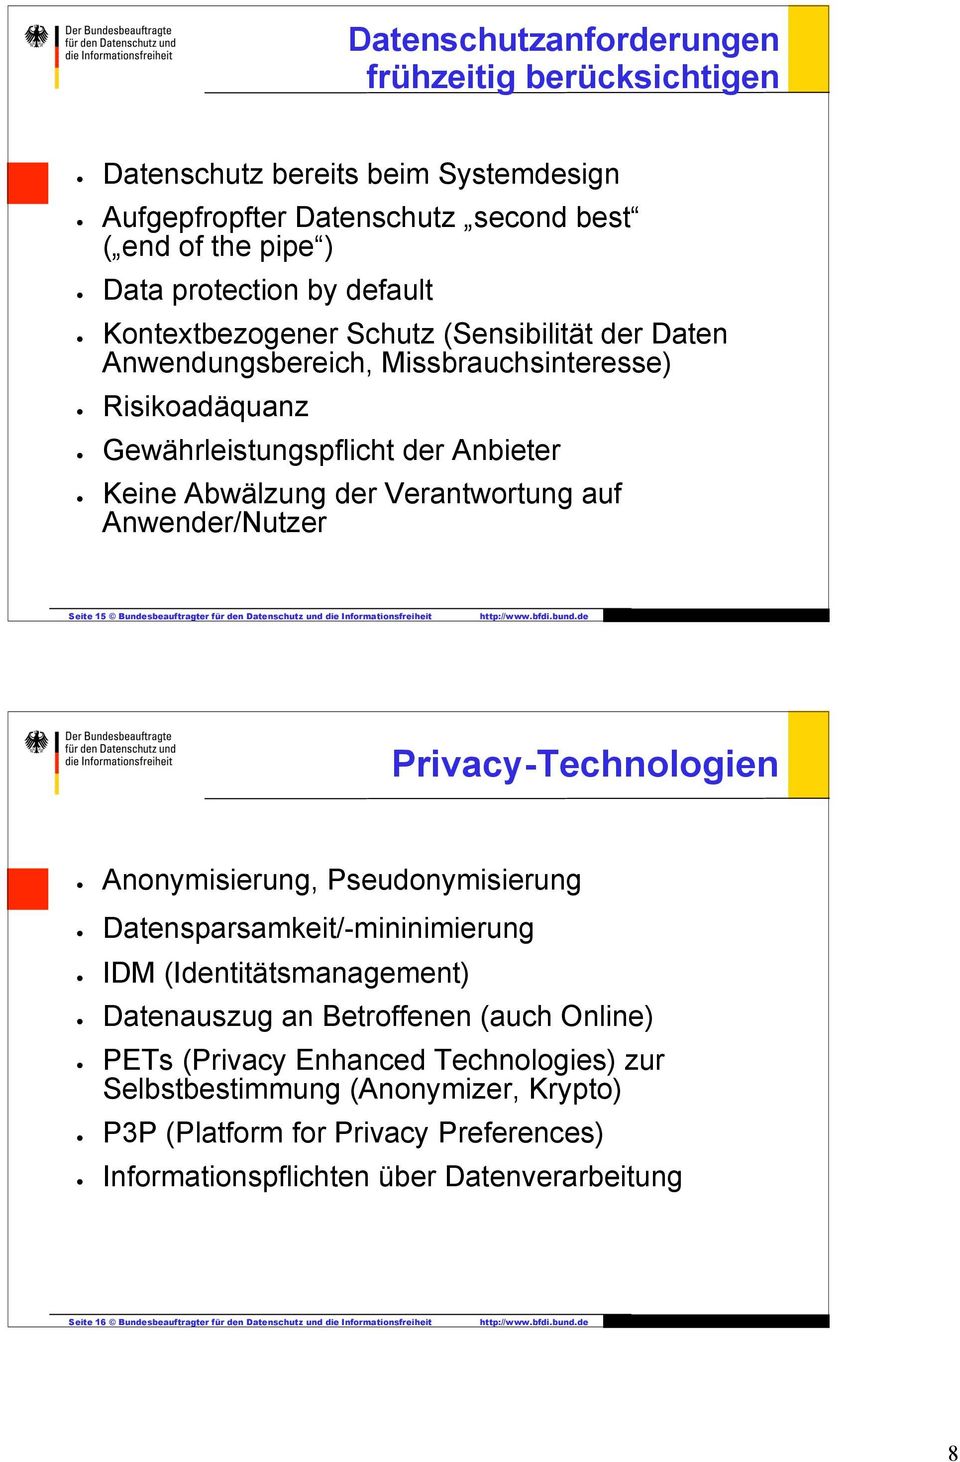 für den Datenschutz und die Informationsfreiheit Privacy-Technologien Anonymisierung, Pseudonymisierung Datensparsamkeit/-mininimierung IDM (Identitätsmanagement) Datenauszug an Betroffenen (auch